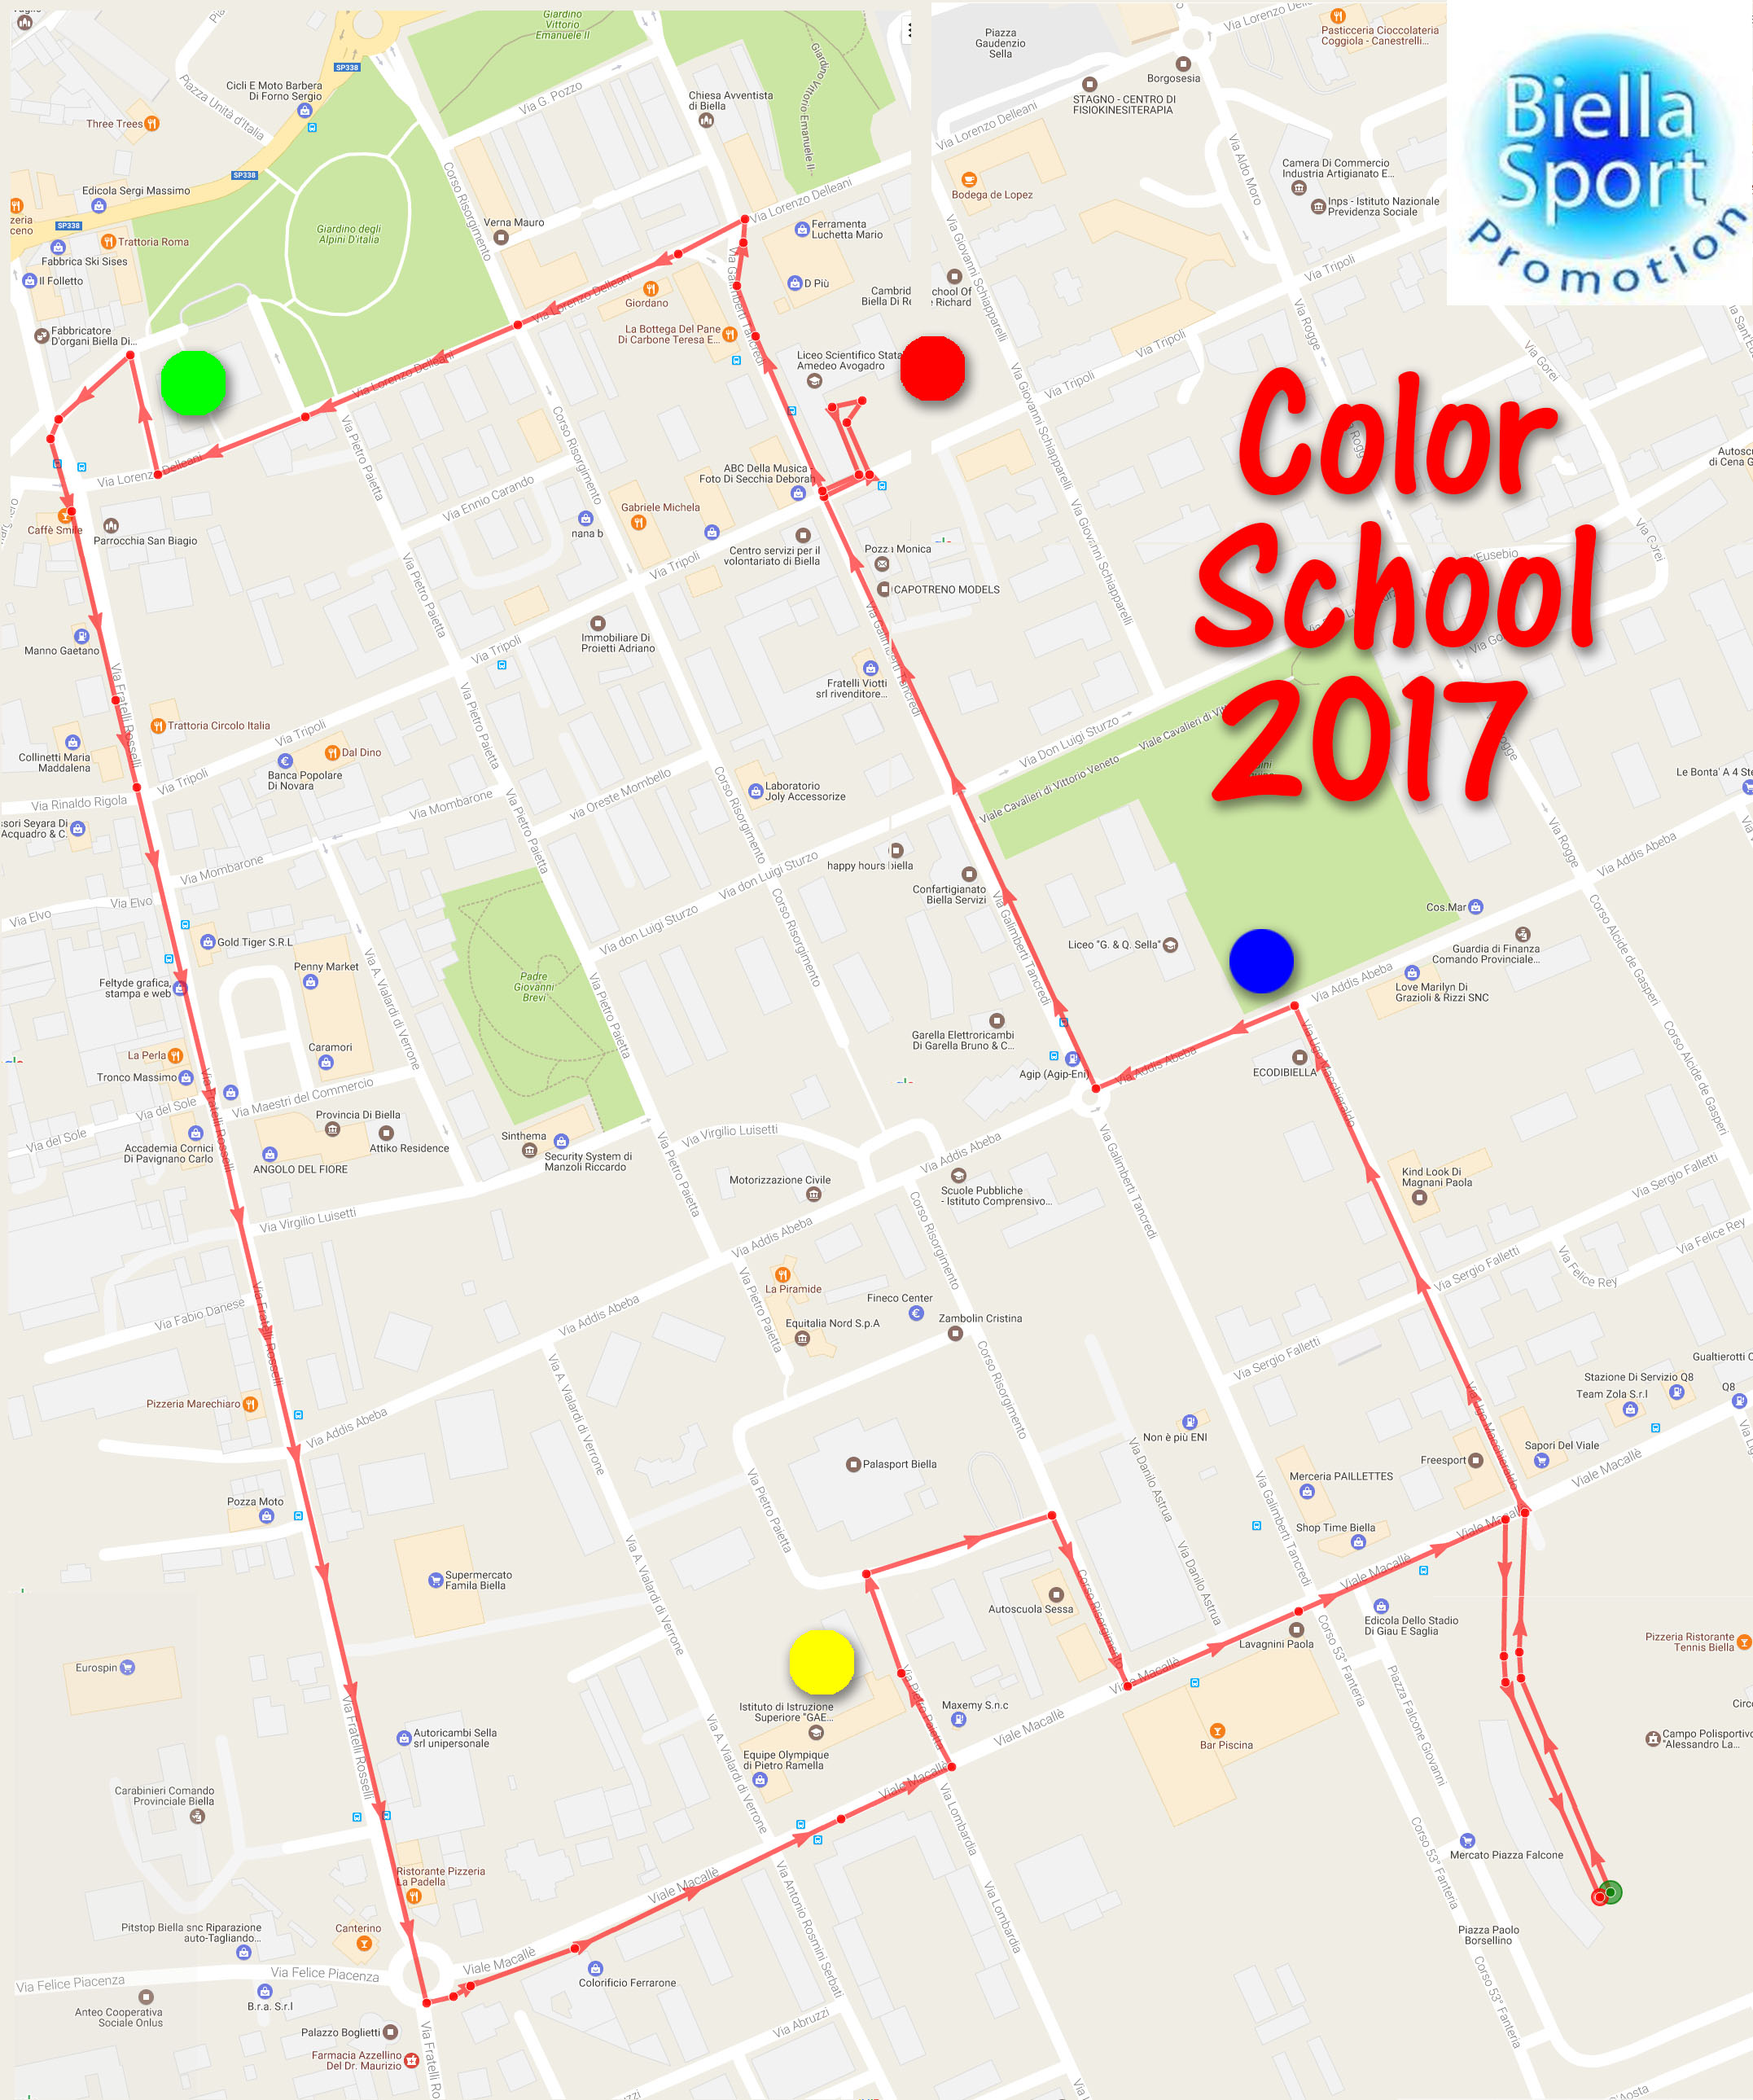 Percorso 2017 Biella Colors' School